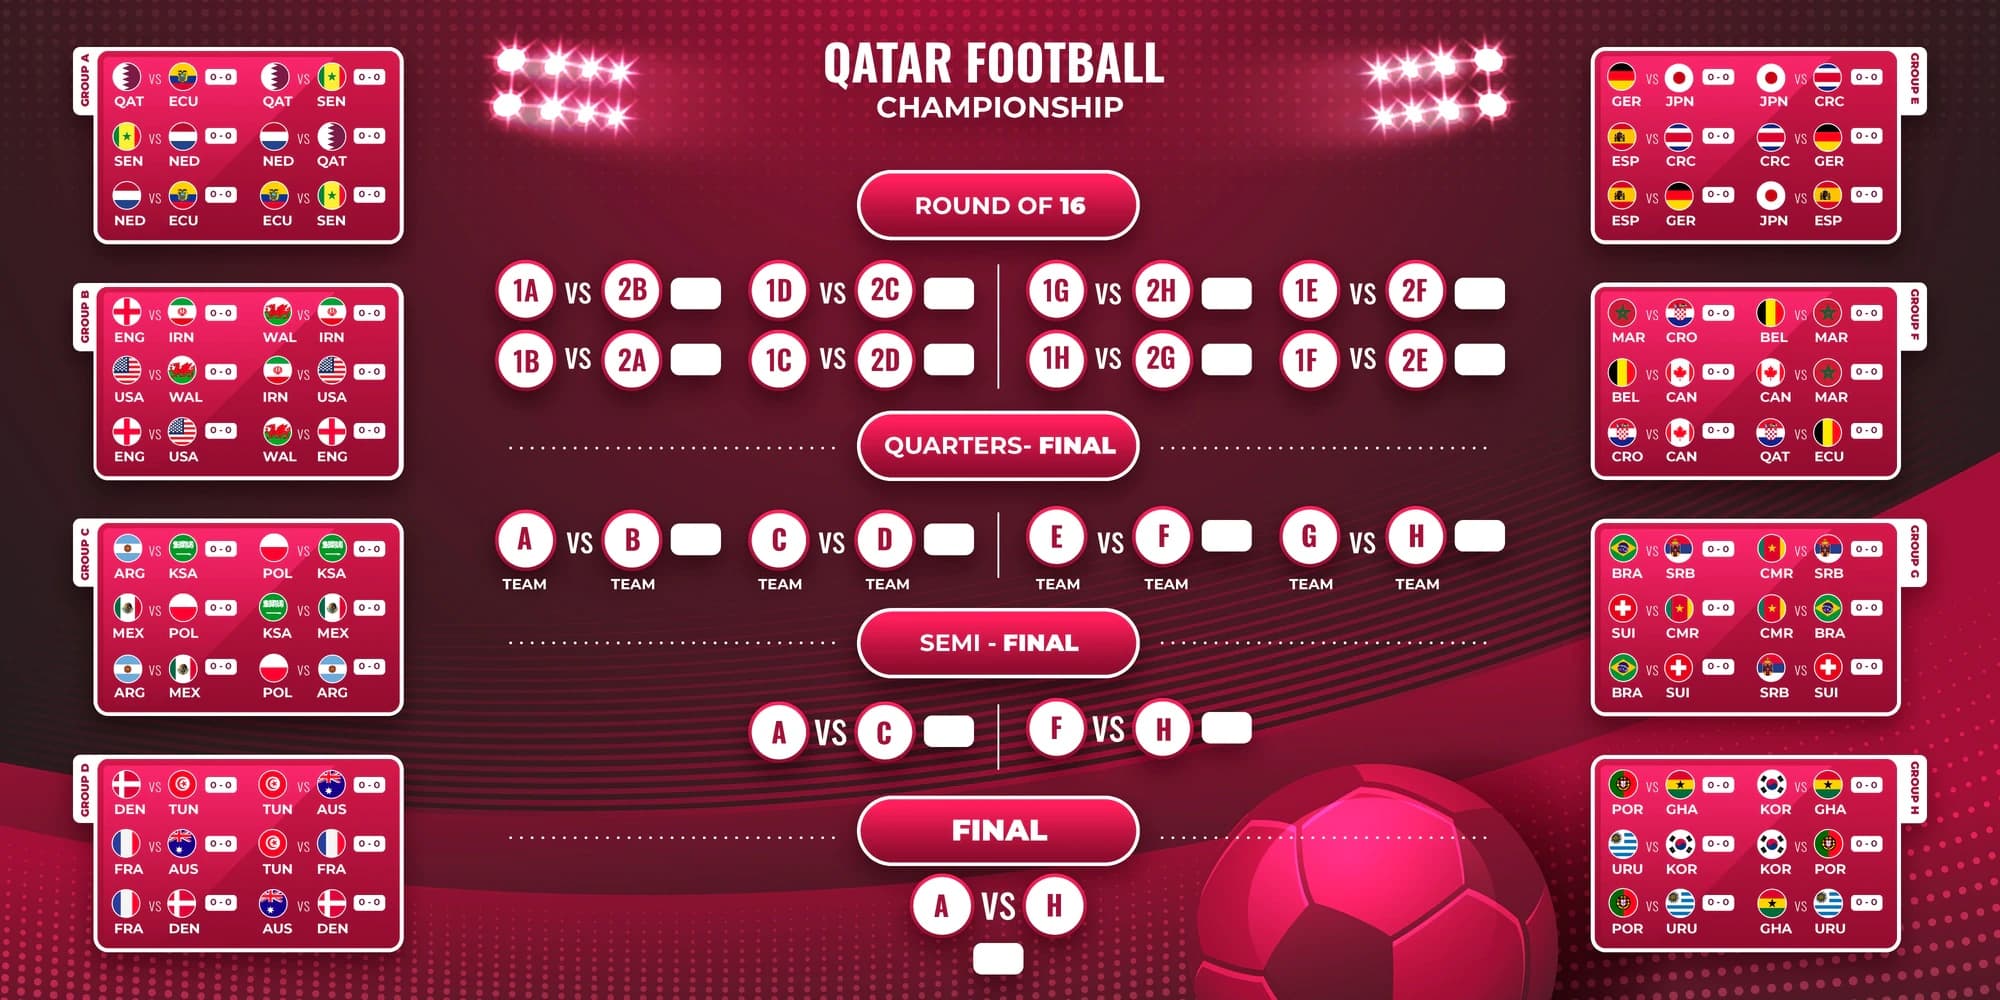 Calendário: datas e horários dos jogos da Copa do Mundo no Catar